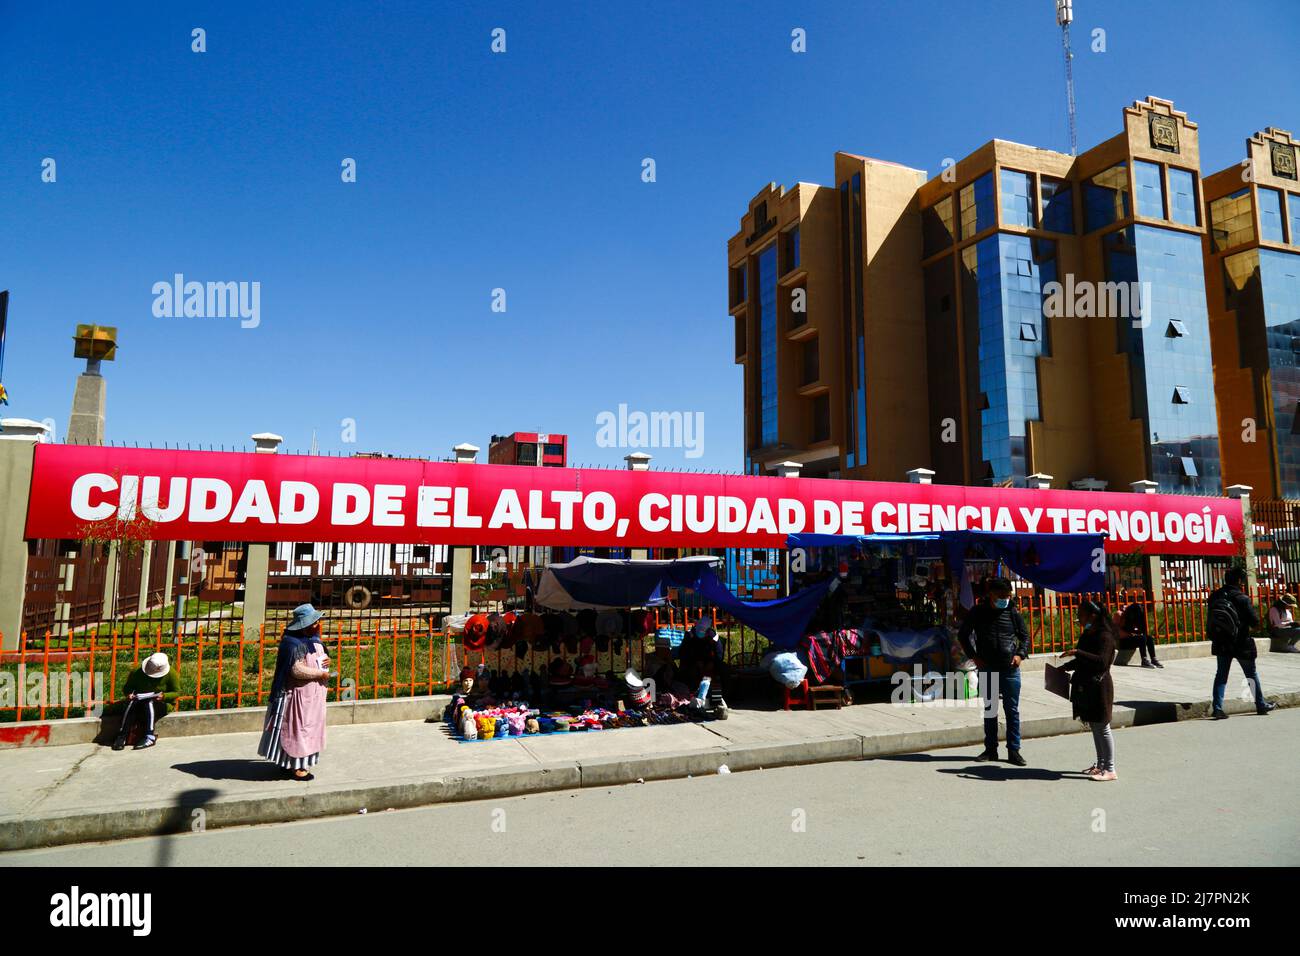 "Città di El Alto, città della scienza e della tecnologia" all'esterno dell'edificio principale dell'università UPEA (Universidad Pública de El Alto), El Alto, Bolivia Foto Stock